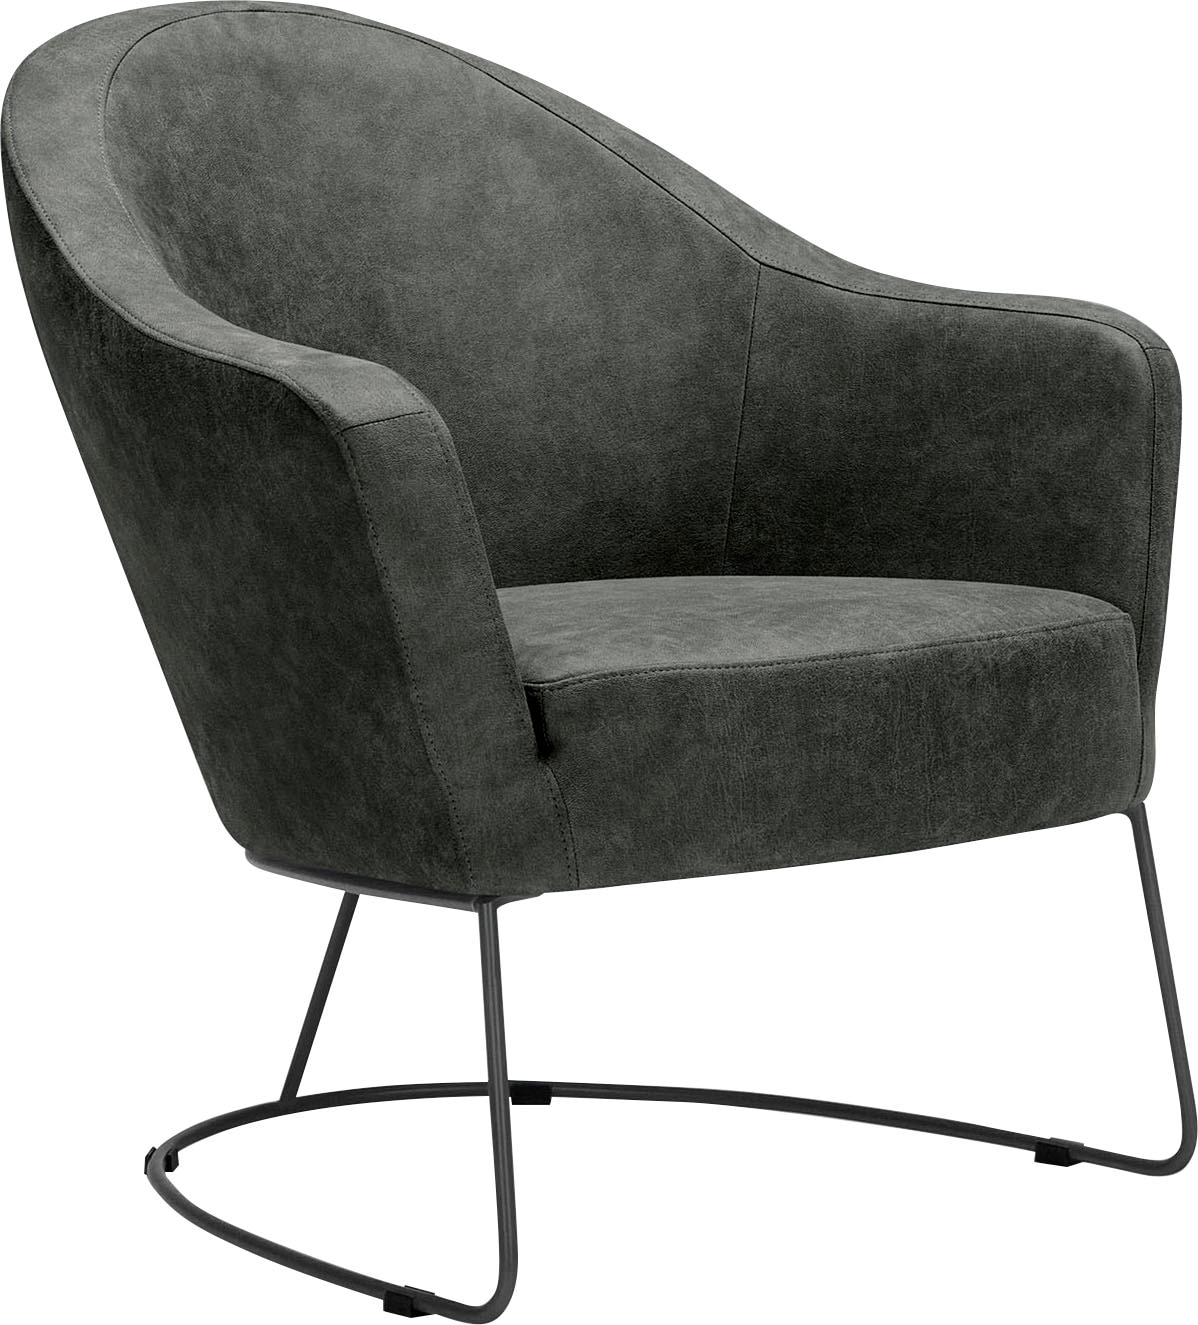 LOVI Sitzgefühl Metallrahmen in Formschaum luftiges kaufen günstig für »Grape«, Loungesessel grau, Sitzfläche